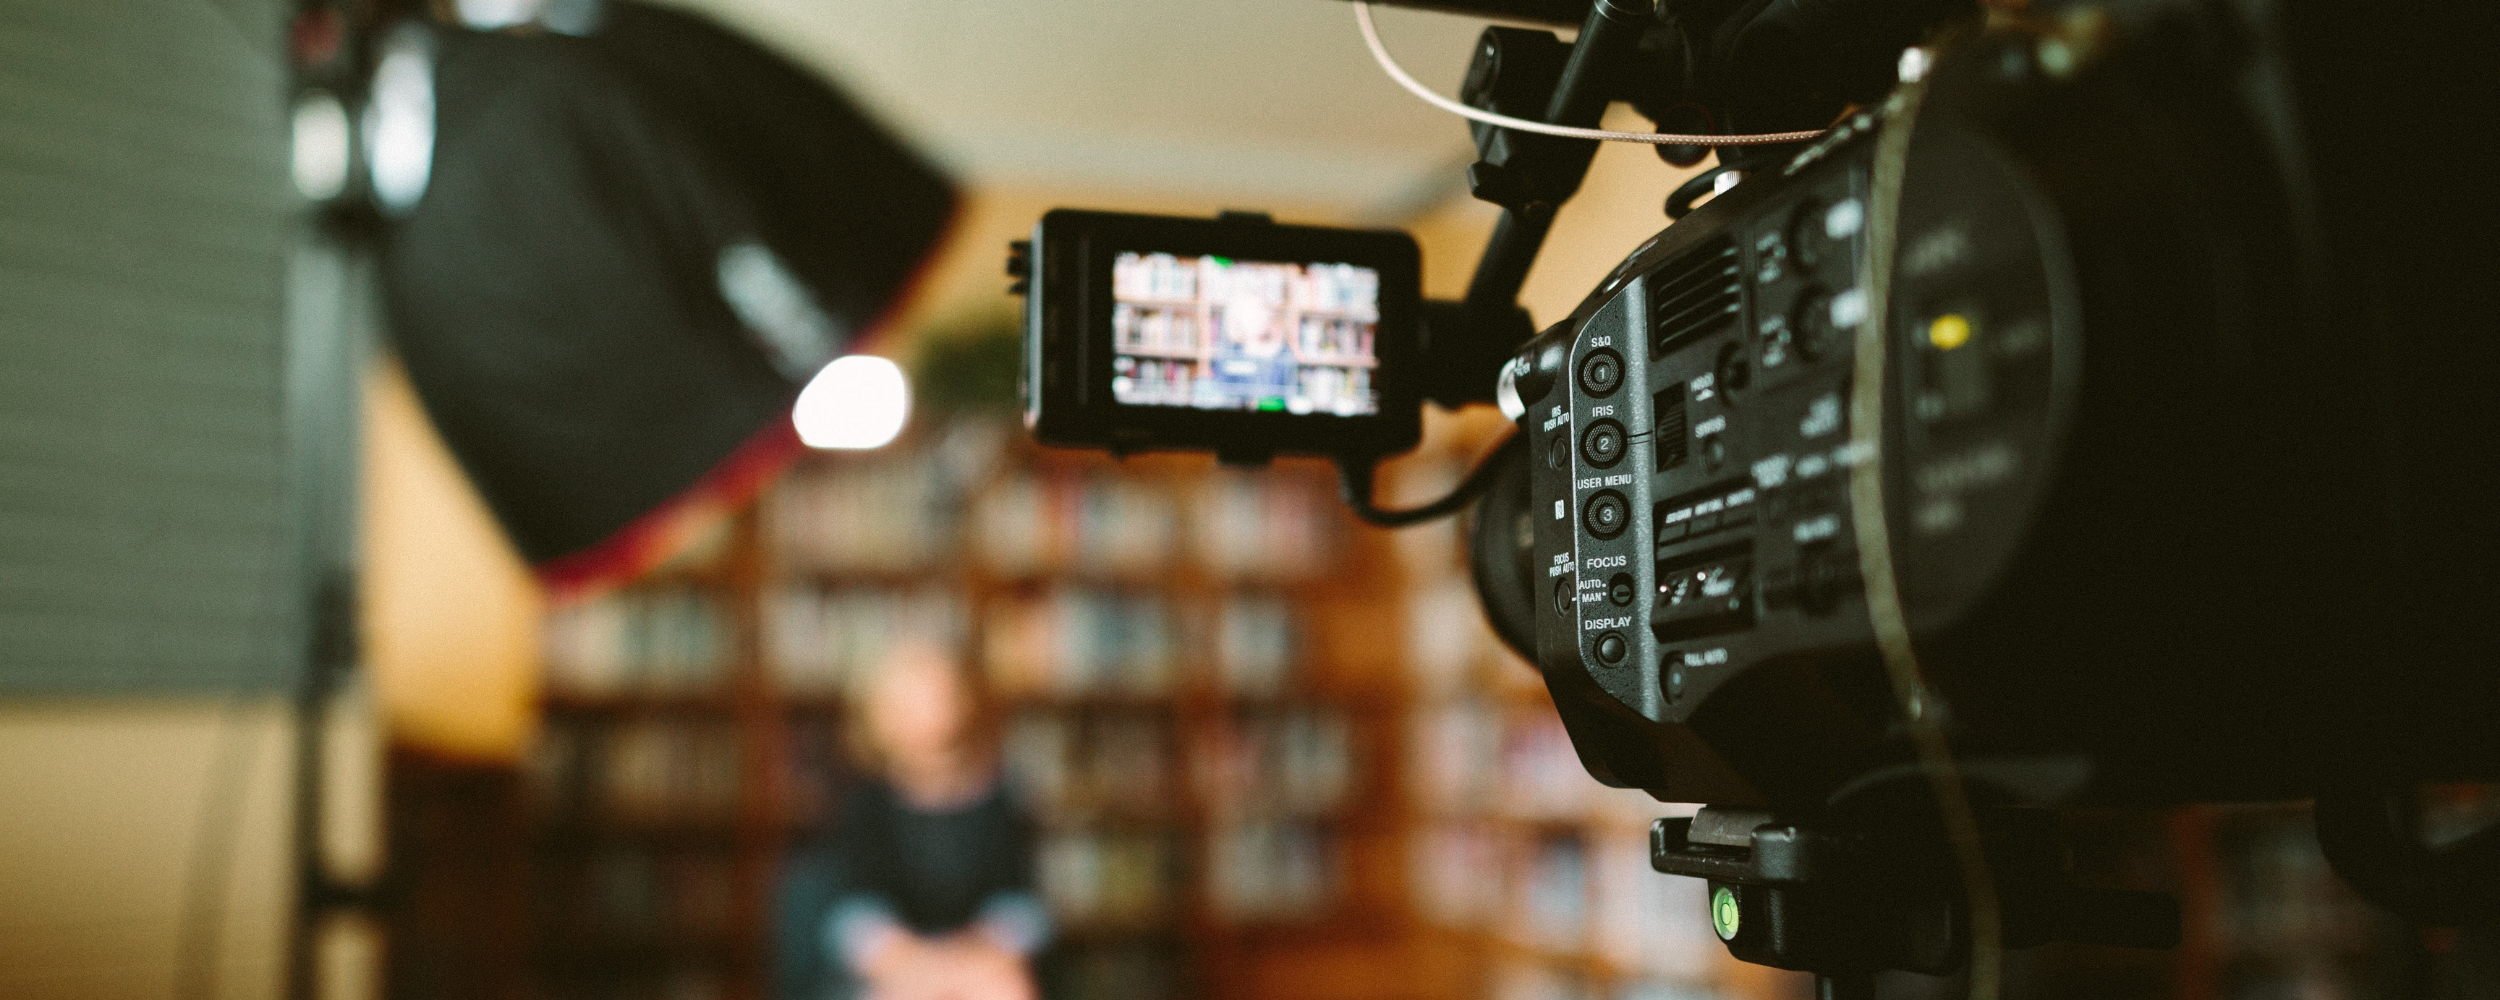 Perspektive eines Videografen neben einer Kamera, die auf eine Person vor einem Bücherregal gerichtet ist